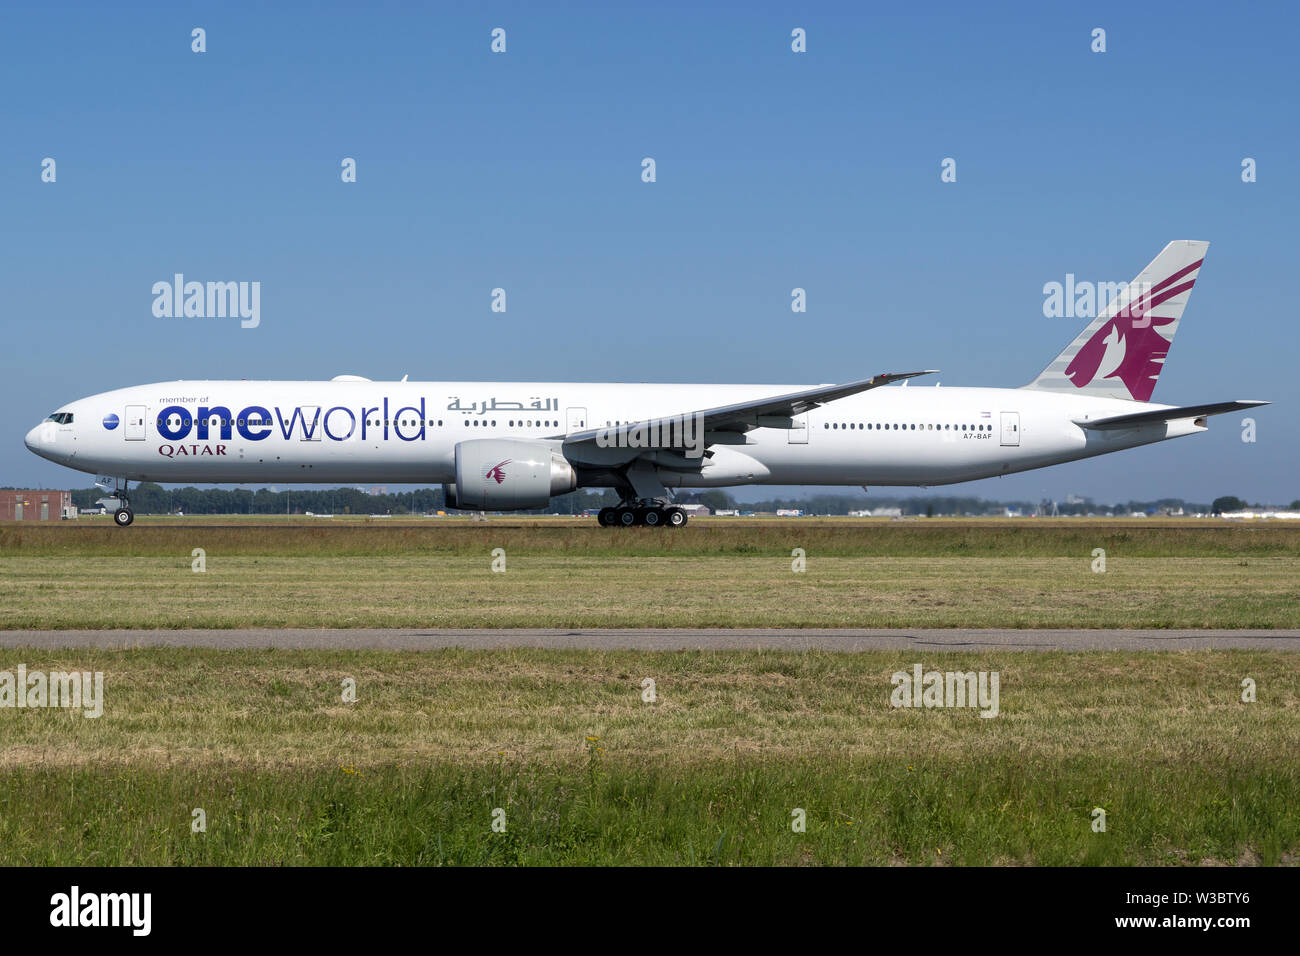 Qatar Airways Boeing 777-300mit Registrierung A7-BAF in speziellen oneworld livery Nehmen auf auf Start- und Landebahn 36L von Amsterdam Airport Schiphol. Stockfoto